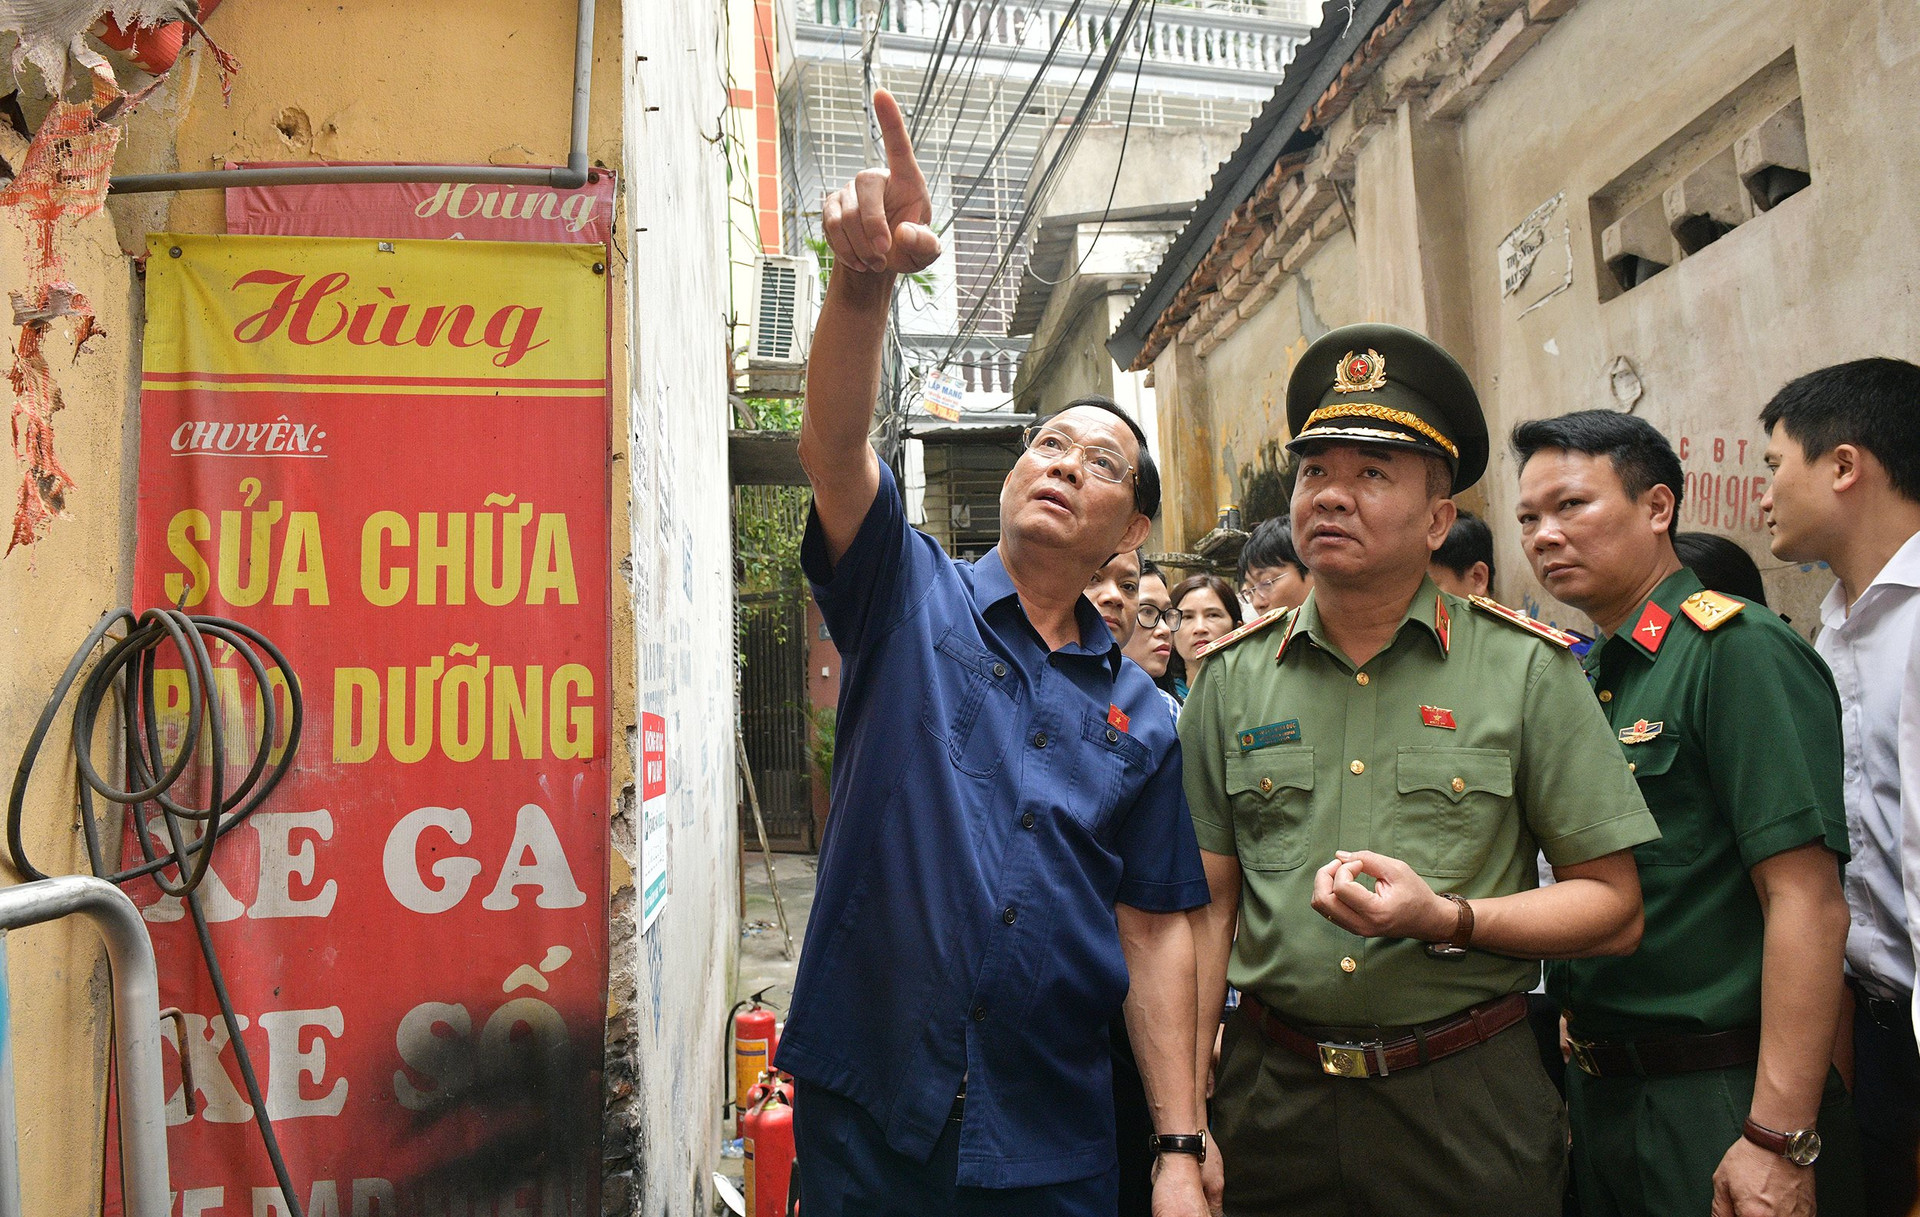 Phó Chủ tịch Quốc hội Trần Quang Phương trực tiếp đến hiện trường kiểm tra công tác cứu nạn, cứu hộ (Ảnh: Quang Vinh)